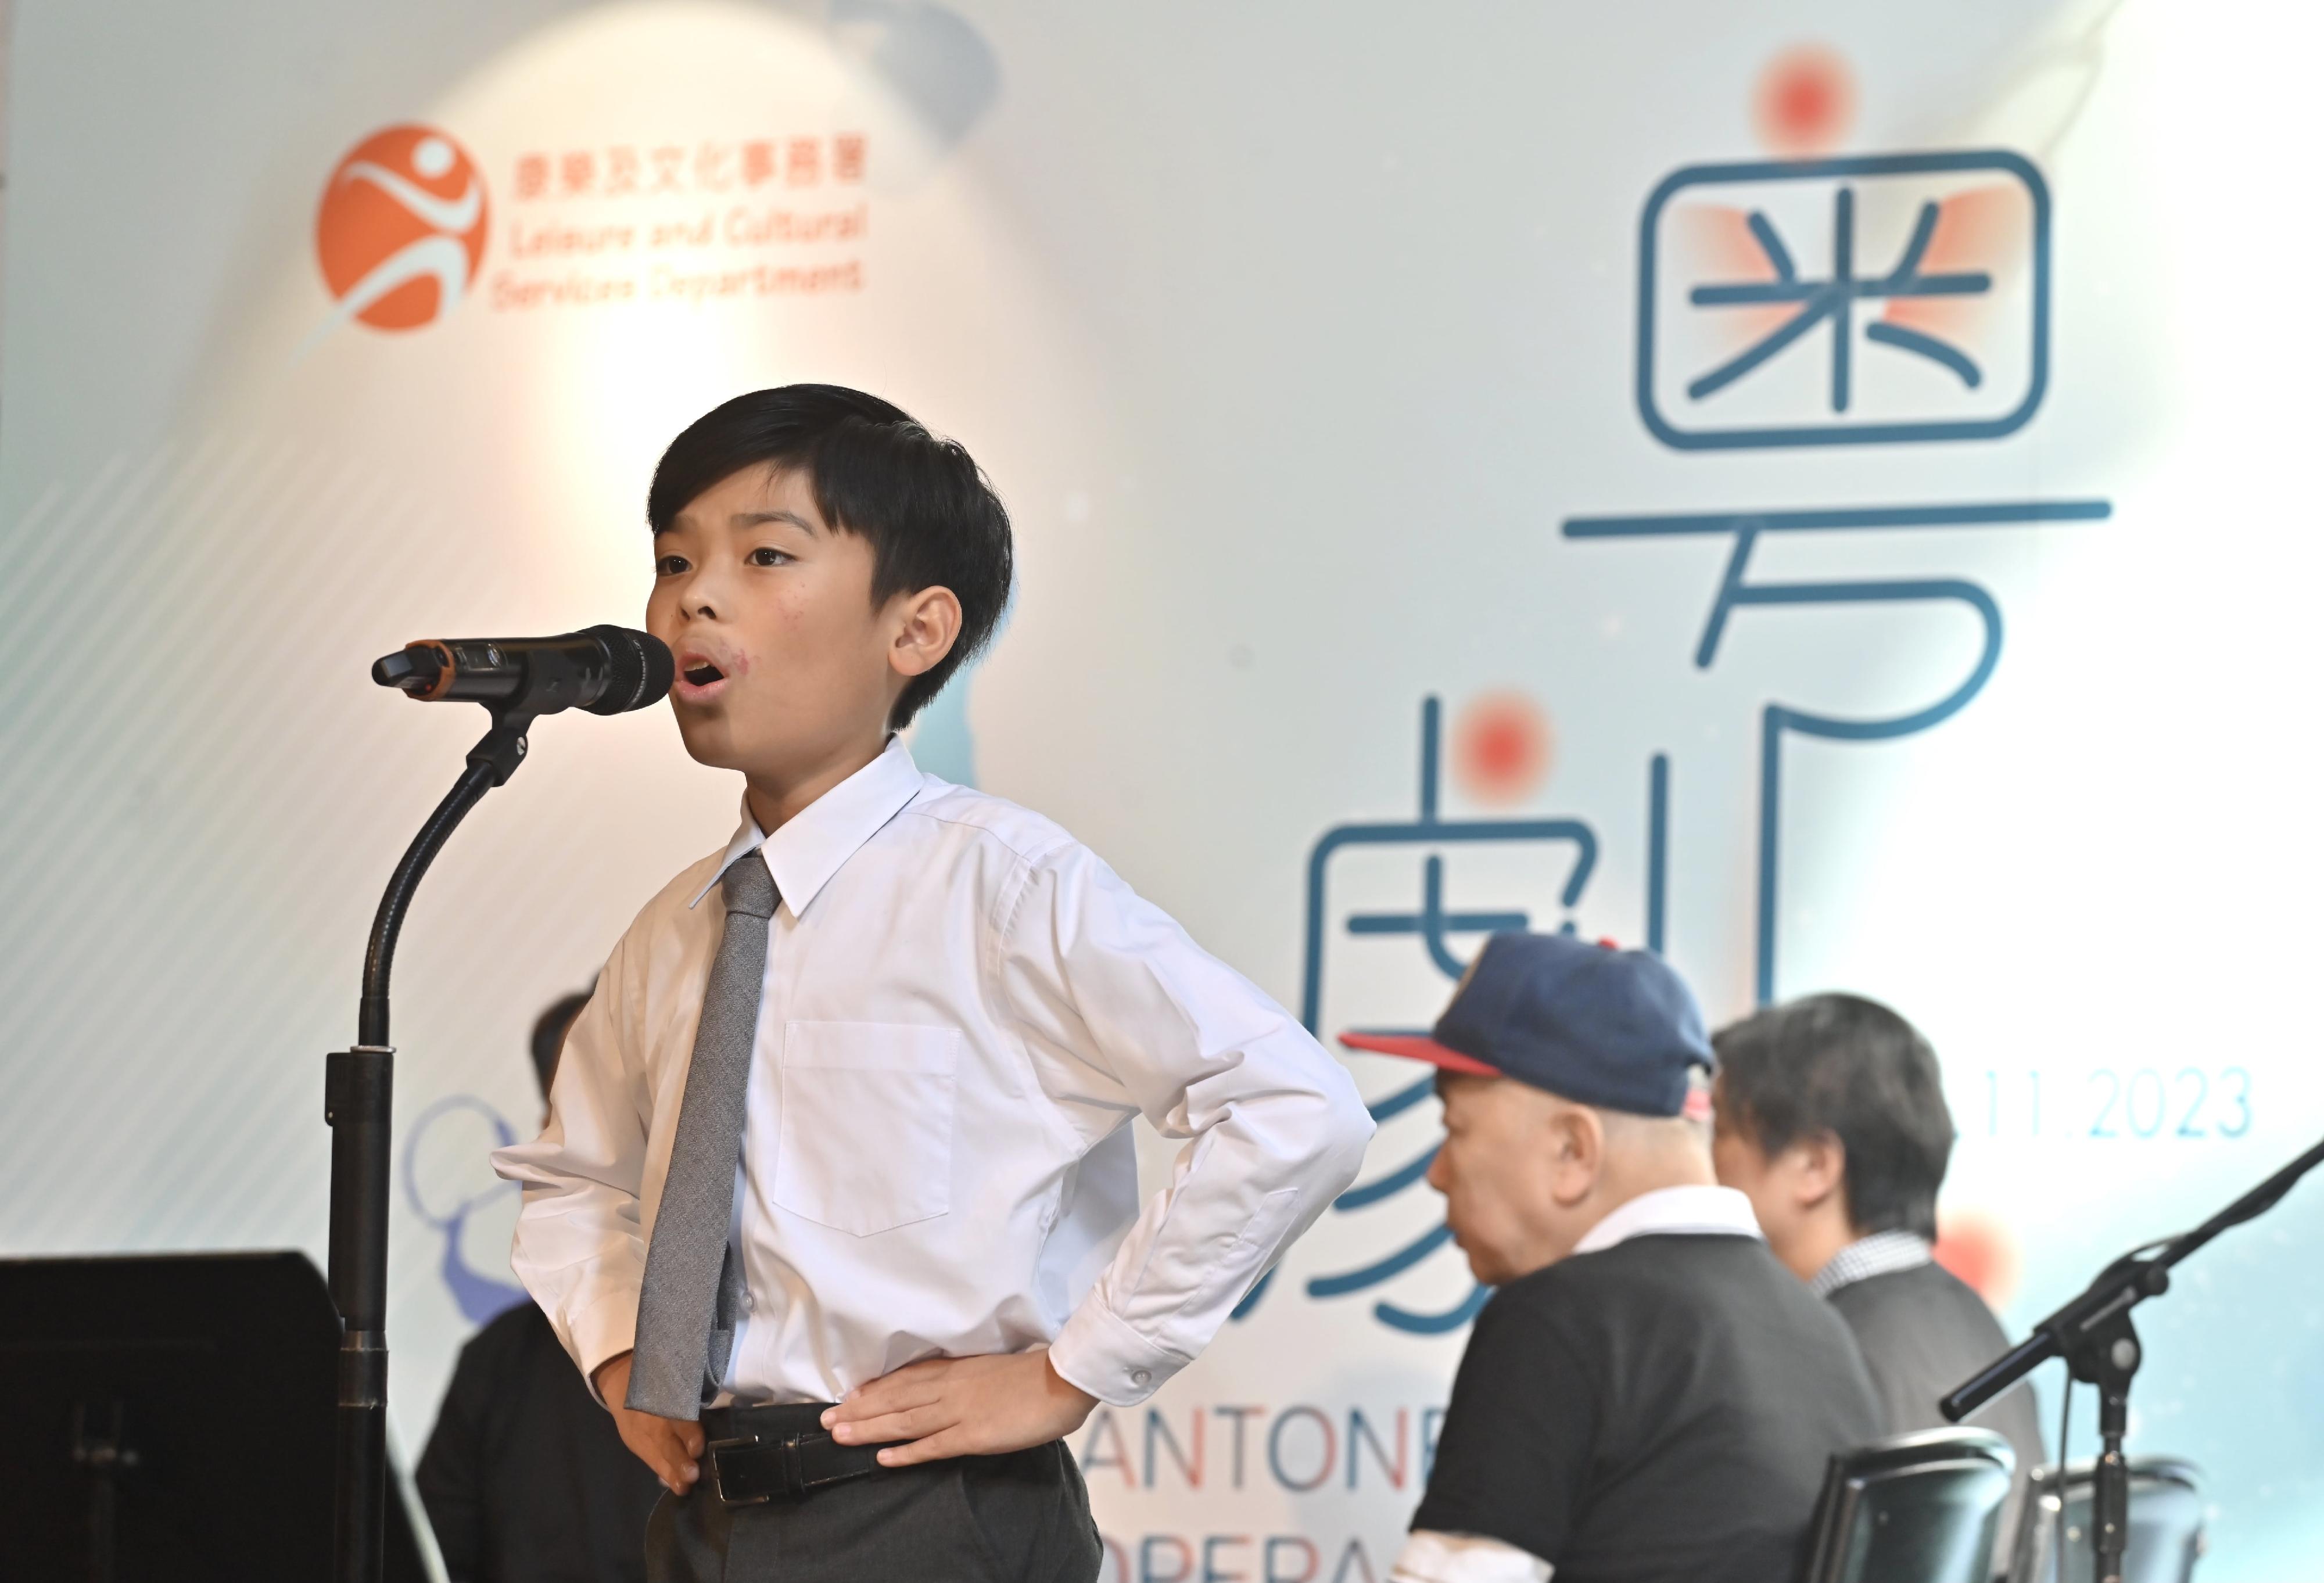 康樂及文化事務署今日（十一月二十六日）下午舉行一年一度的「粵劇日」。圖示應屆香港學校音樂節粵曲比賽優勝者即場表演。